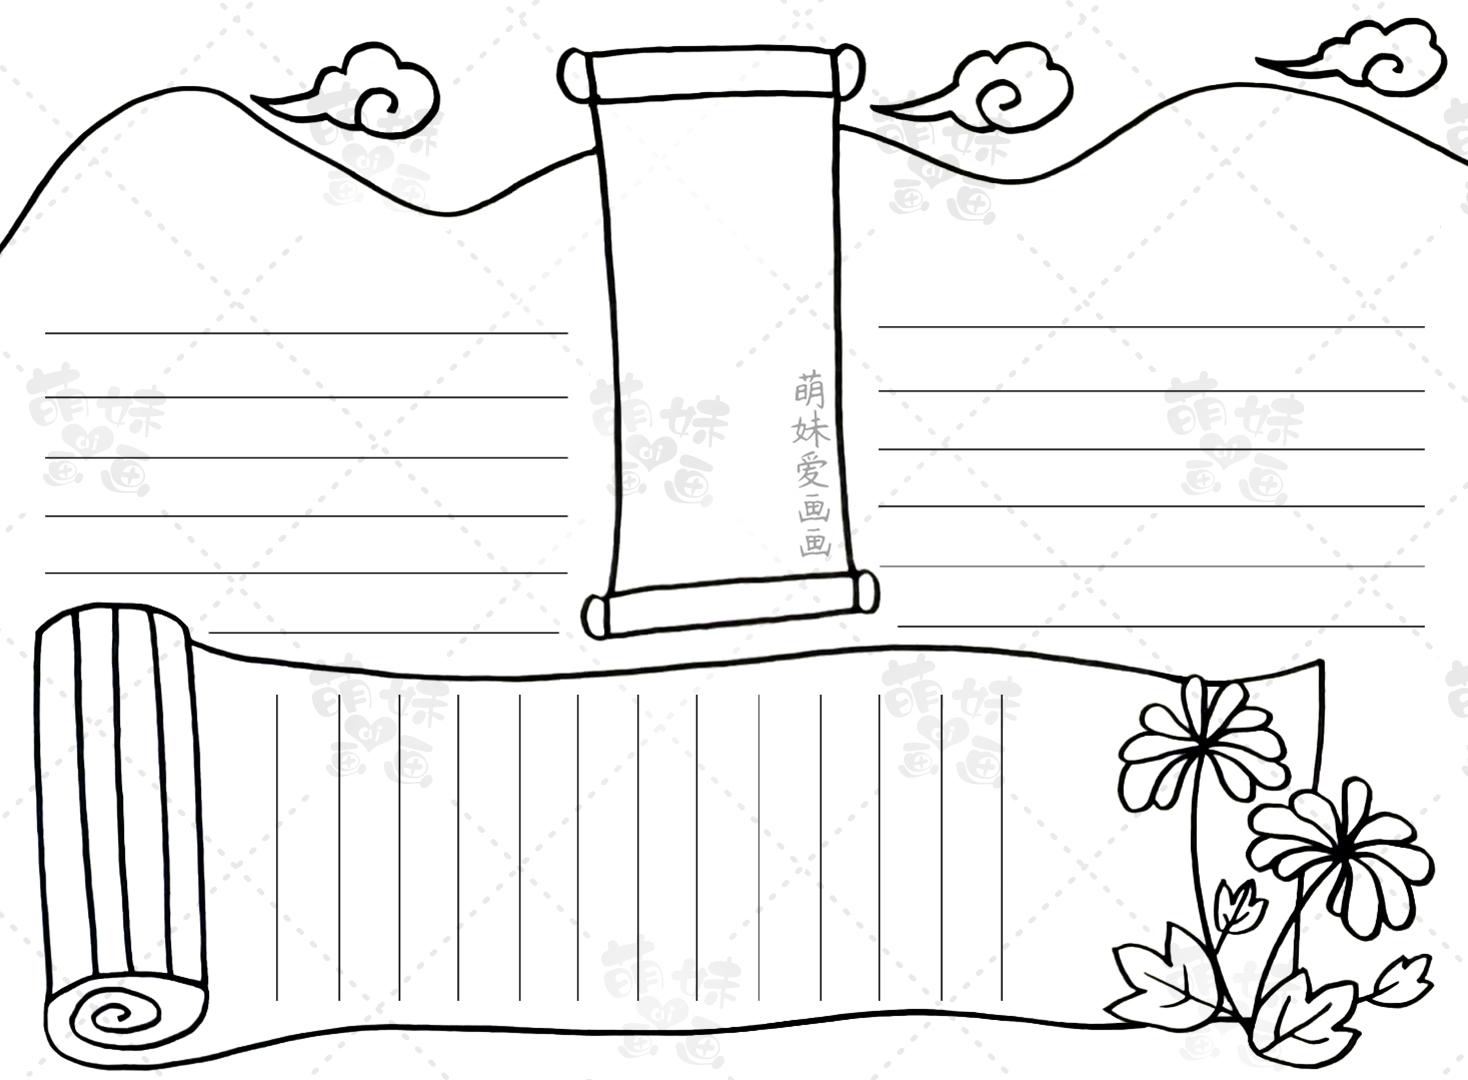 第二款:古典款重阳节手抄报一,画出手抄报线稿我们用卷轴和远山作为手